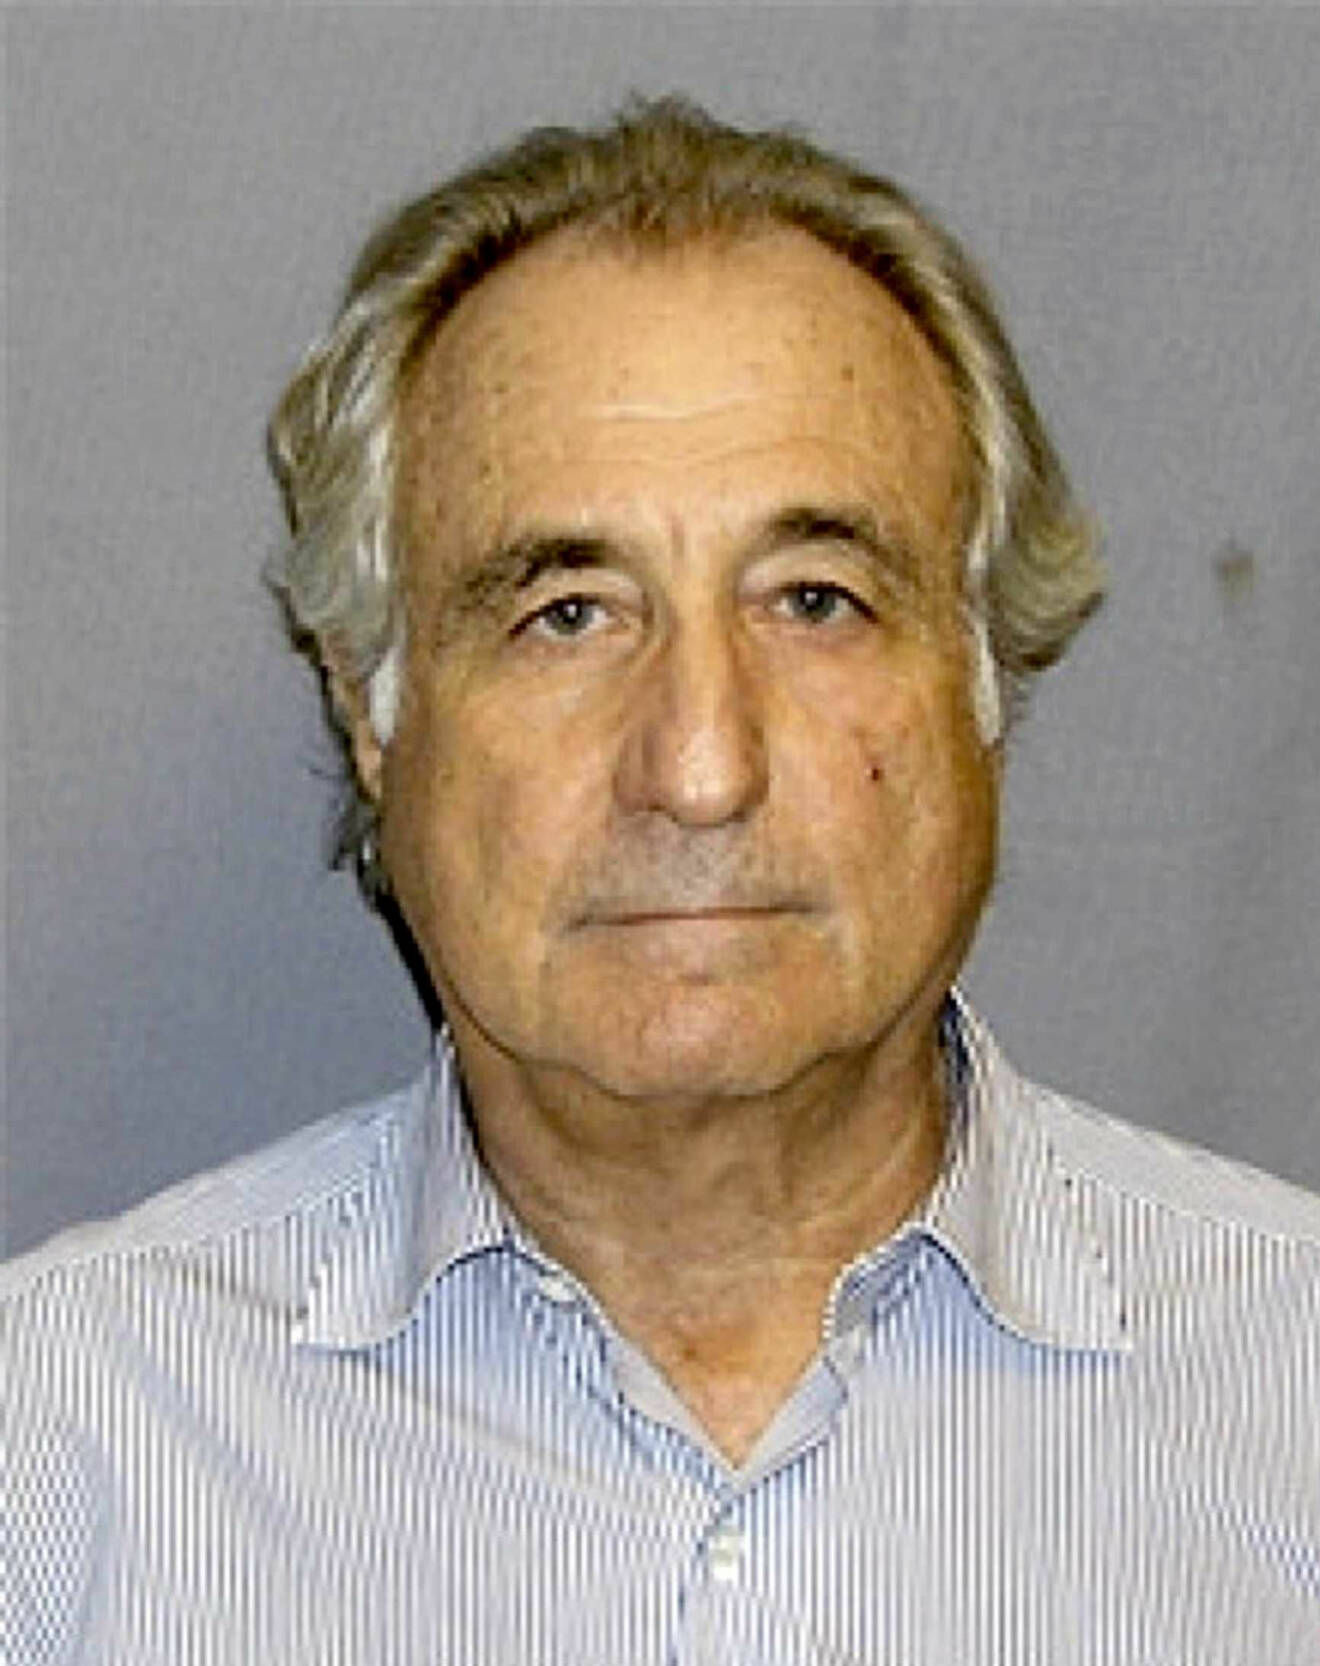 Bernie Madoff i häkte efter att han greps misstänkt för ett bedrägeri i miljardklassen.